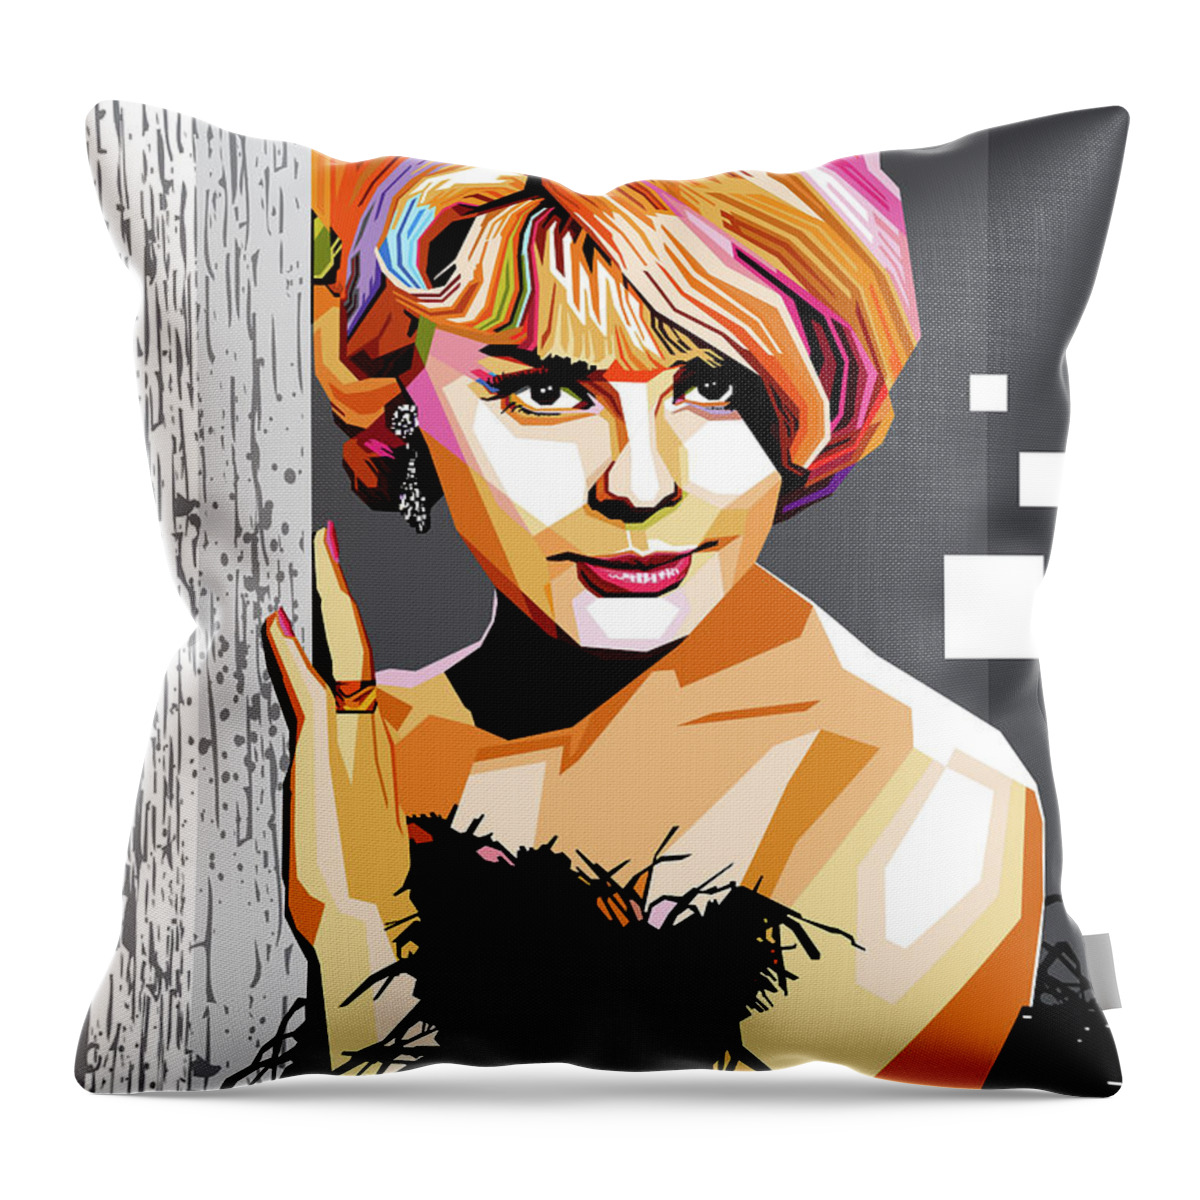 Elke Throw Pillow featuring the digital art Elke Sommer by Stars on Art